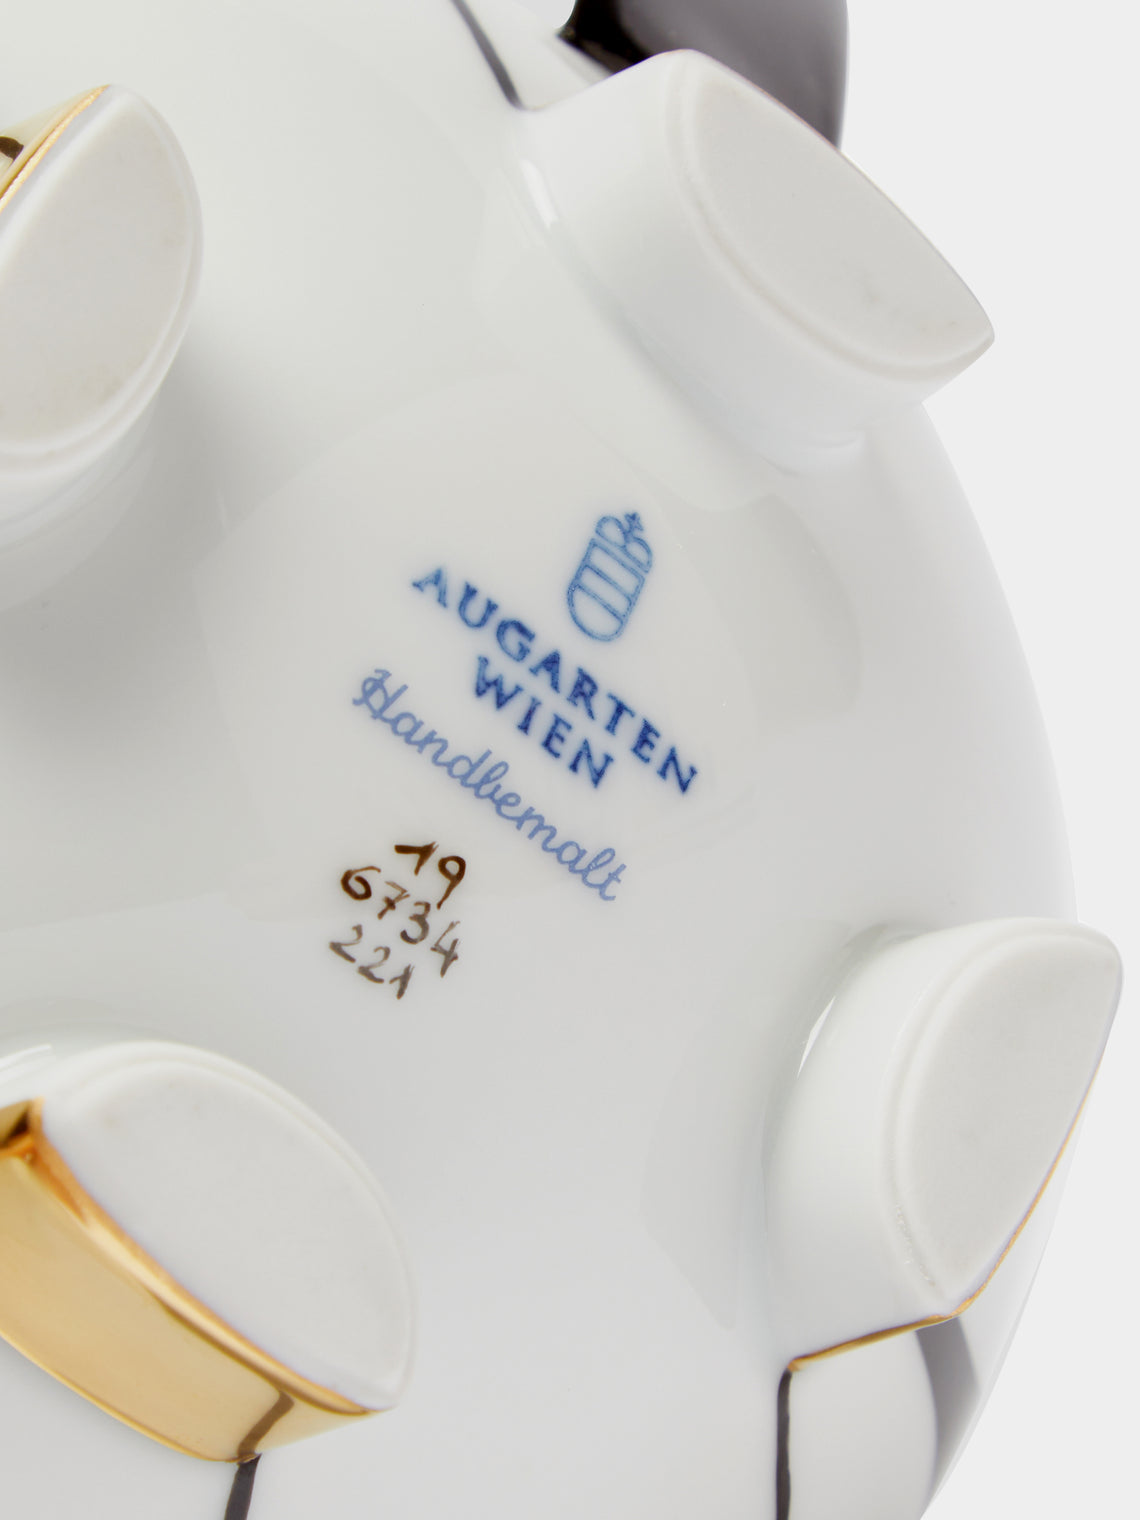 Augarten - Déco Vienne Hand-Painted Porcelain Coffee Pot - ABASK